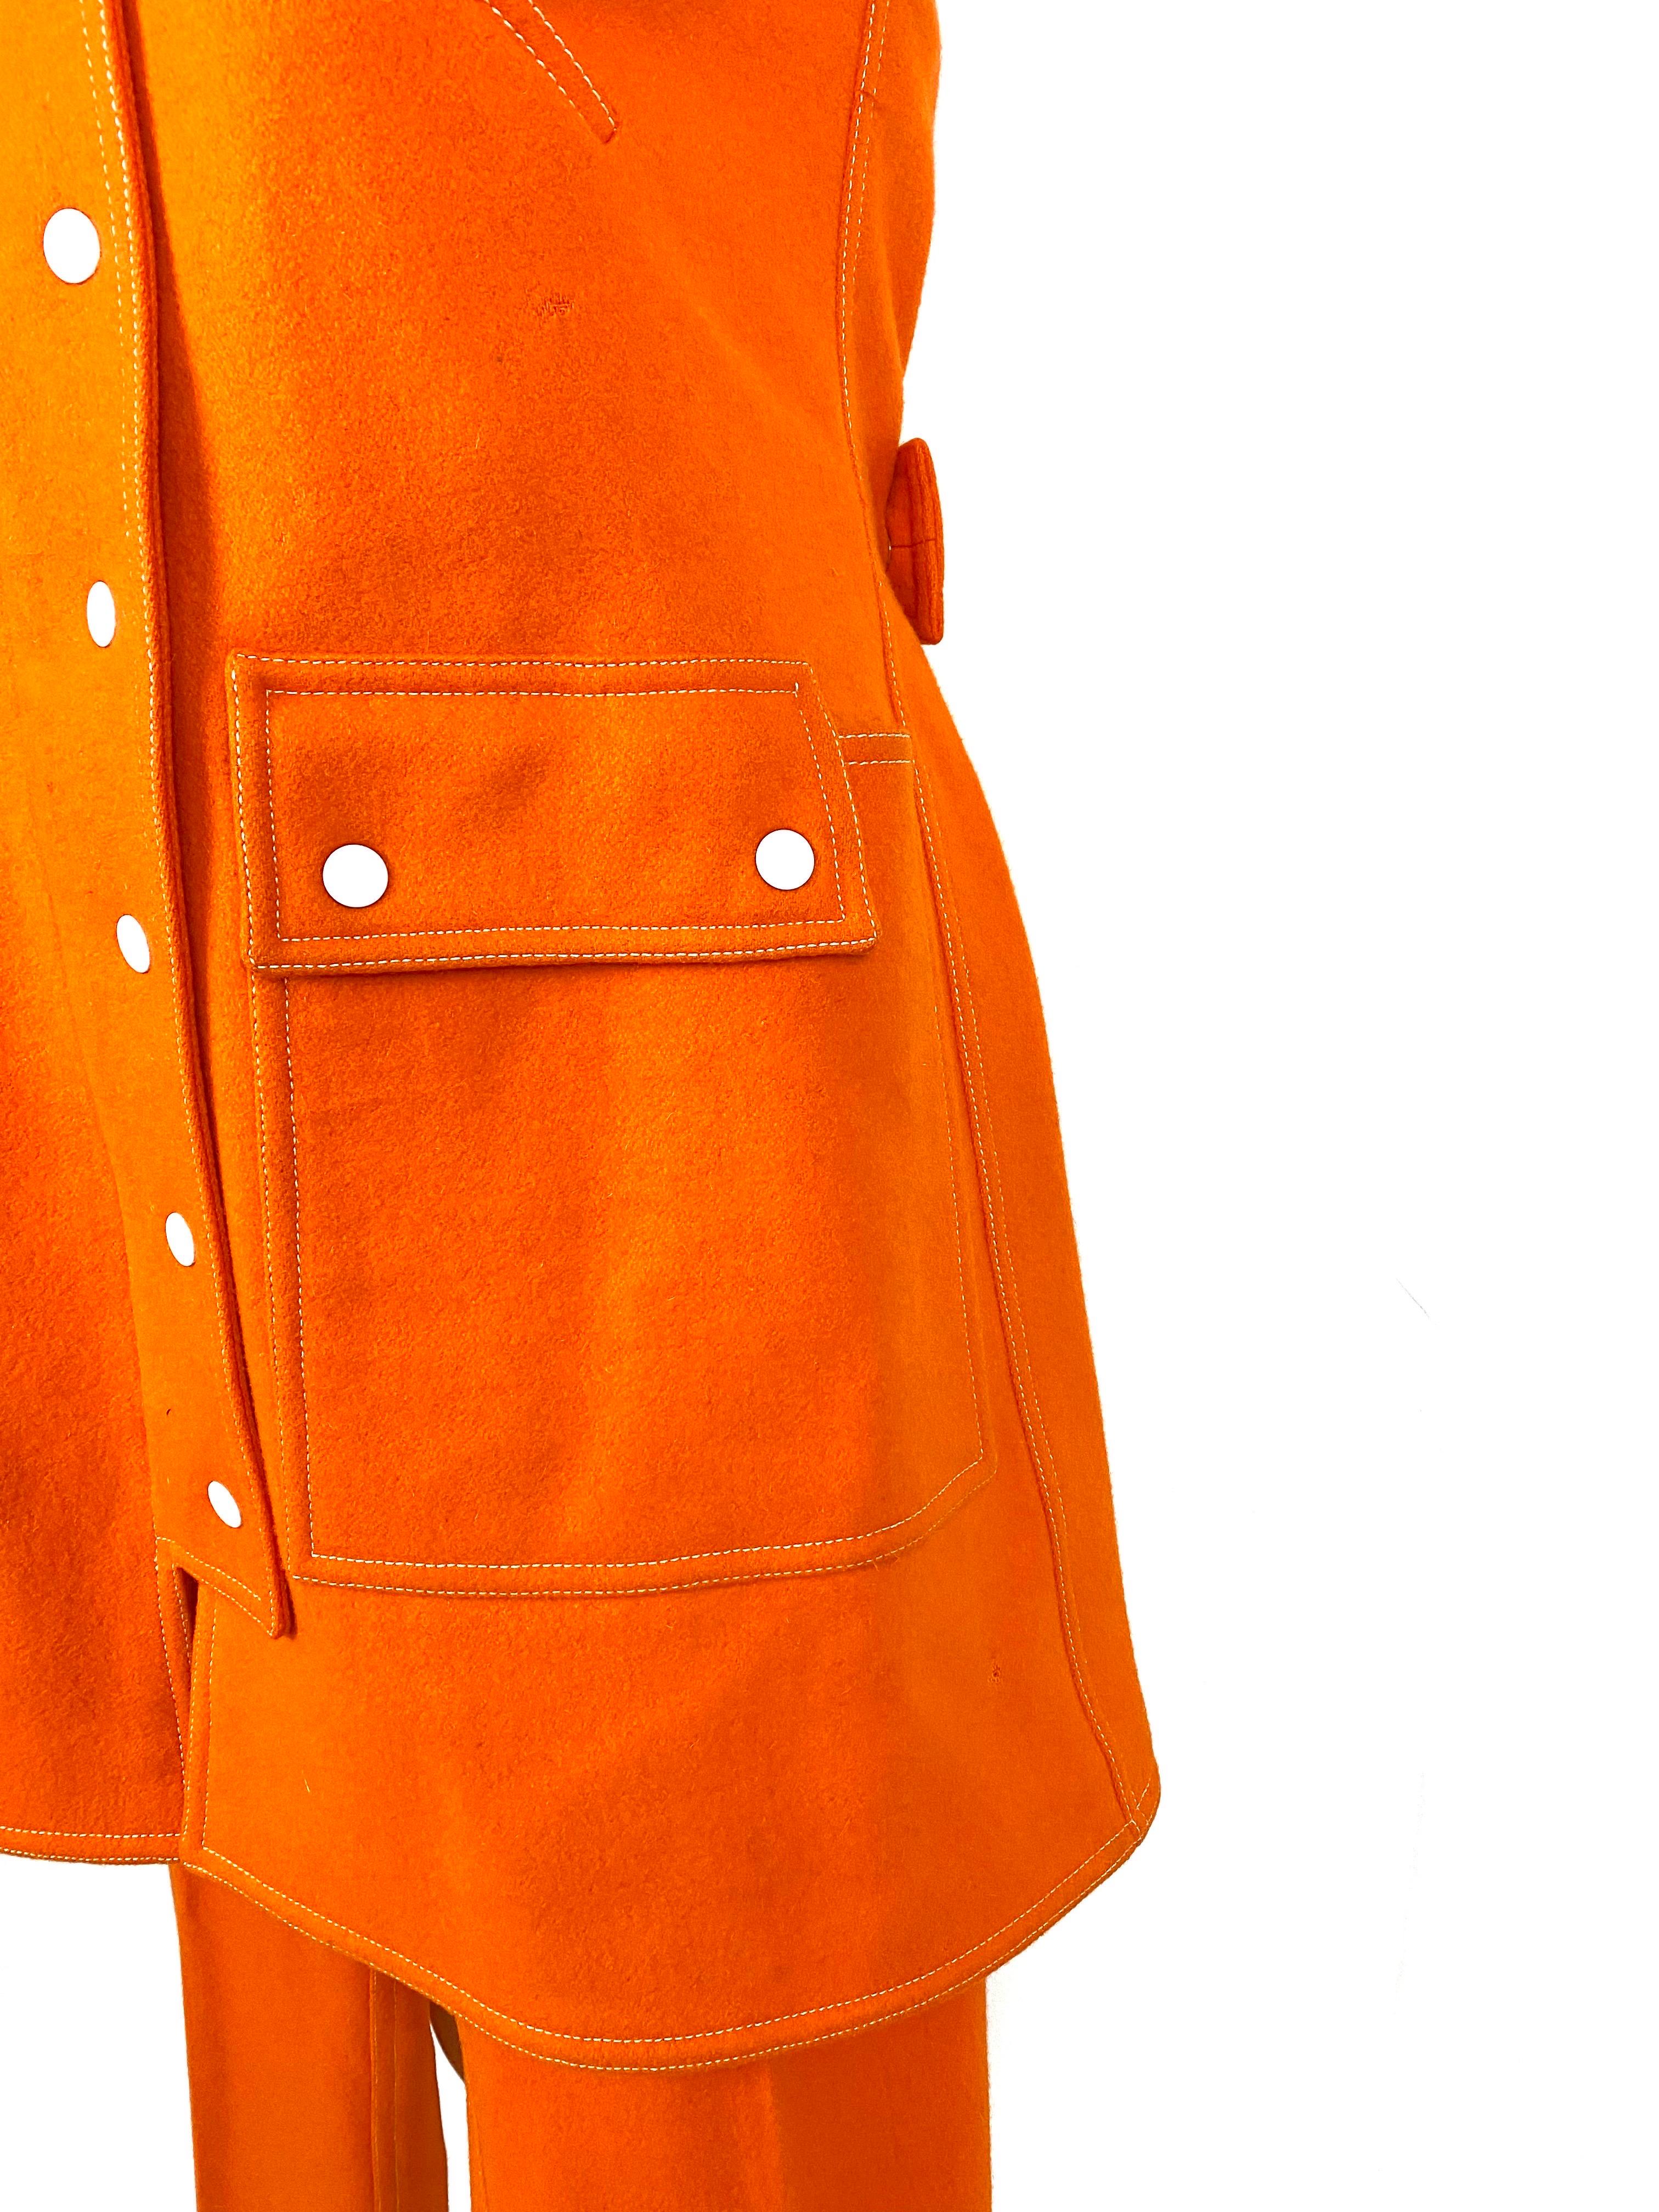 A. Courréges Hyperbole wool orange trouser suit from 1970 For Sale 12